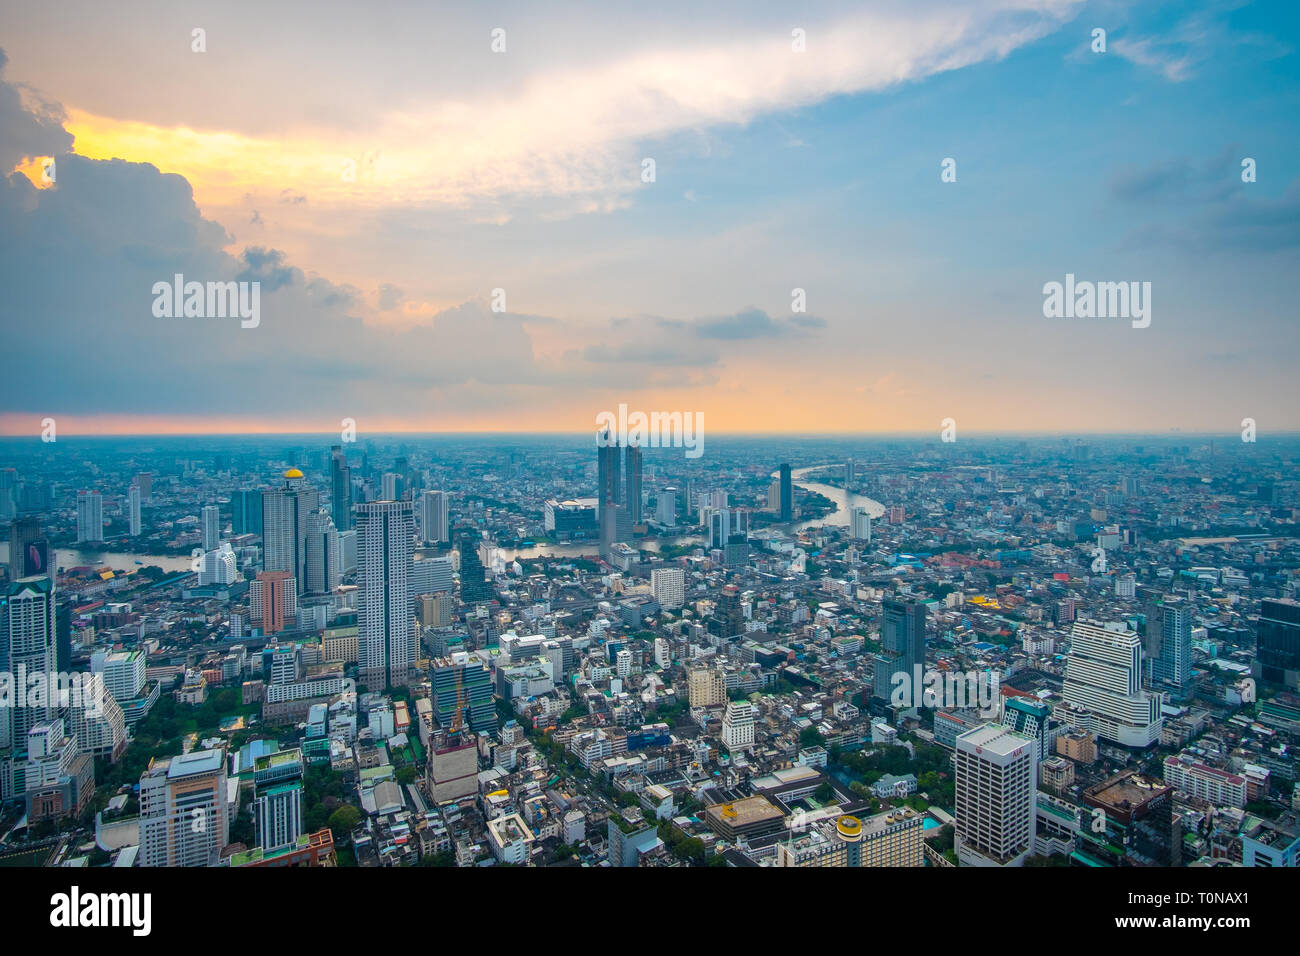 Panoramablick auf die Stadt Bangkok während der Dämmerung Himmel. Luftaufnahme der Stadt Bangkok - Thailand. Stockfoto